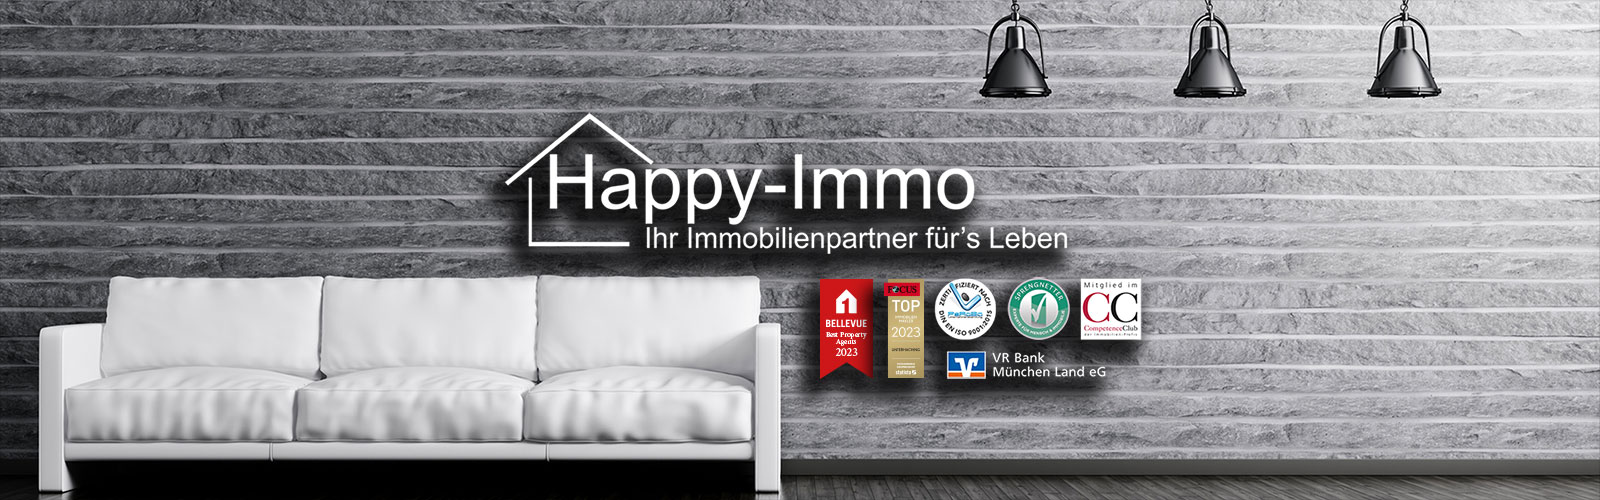 Happy Immo GmbH Immobilienmakler Achheim 089-6494870